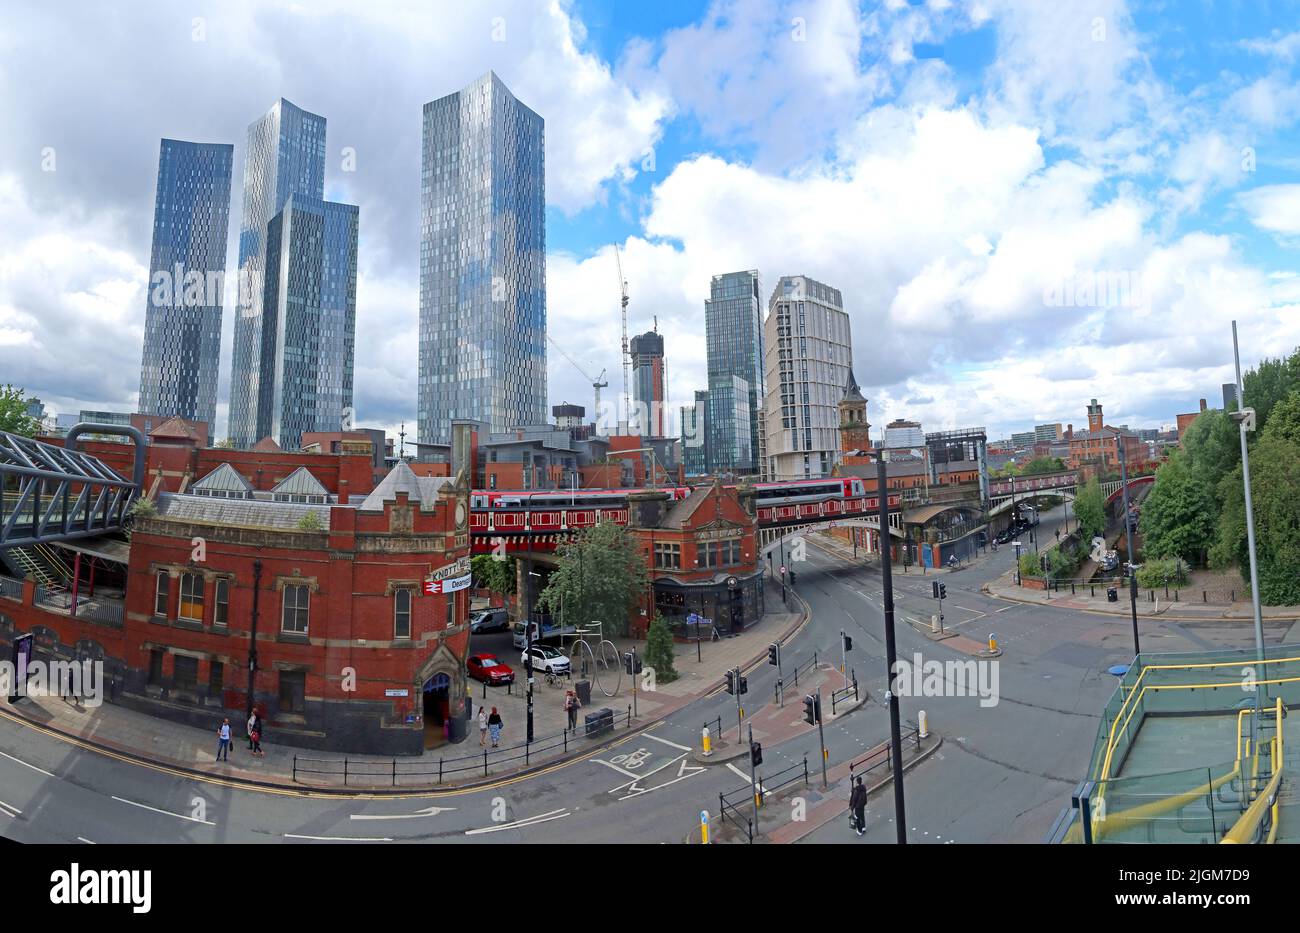 Panorama von Deansgate Castlefield, Manchester, 2 Whitworth St W, Deansgate, Locks, Manchester, England, UK, M1 5LH Stockfoto